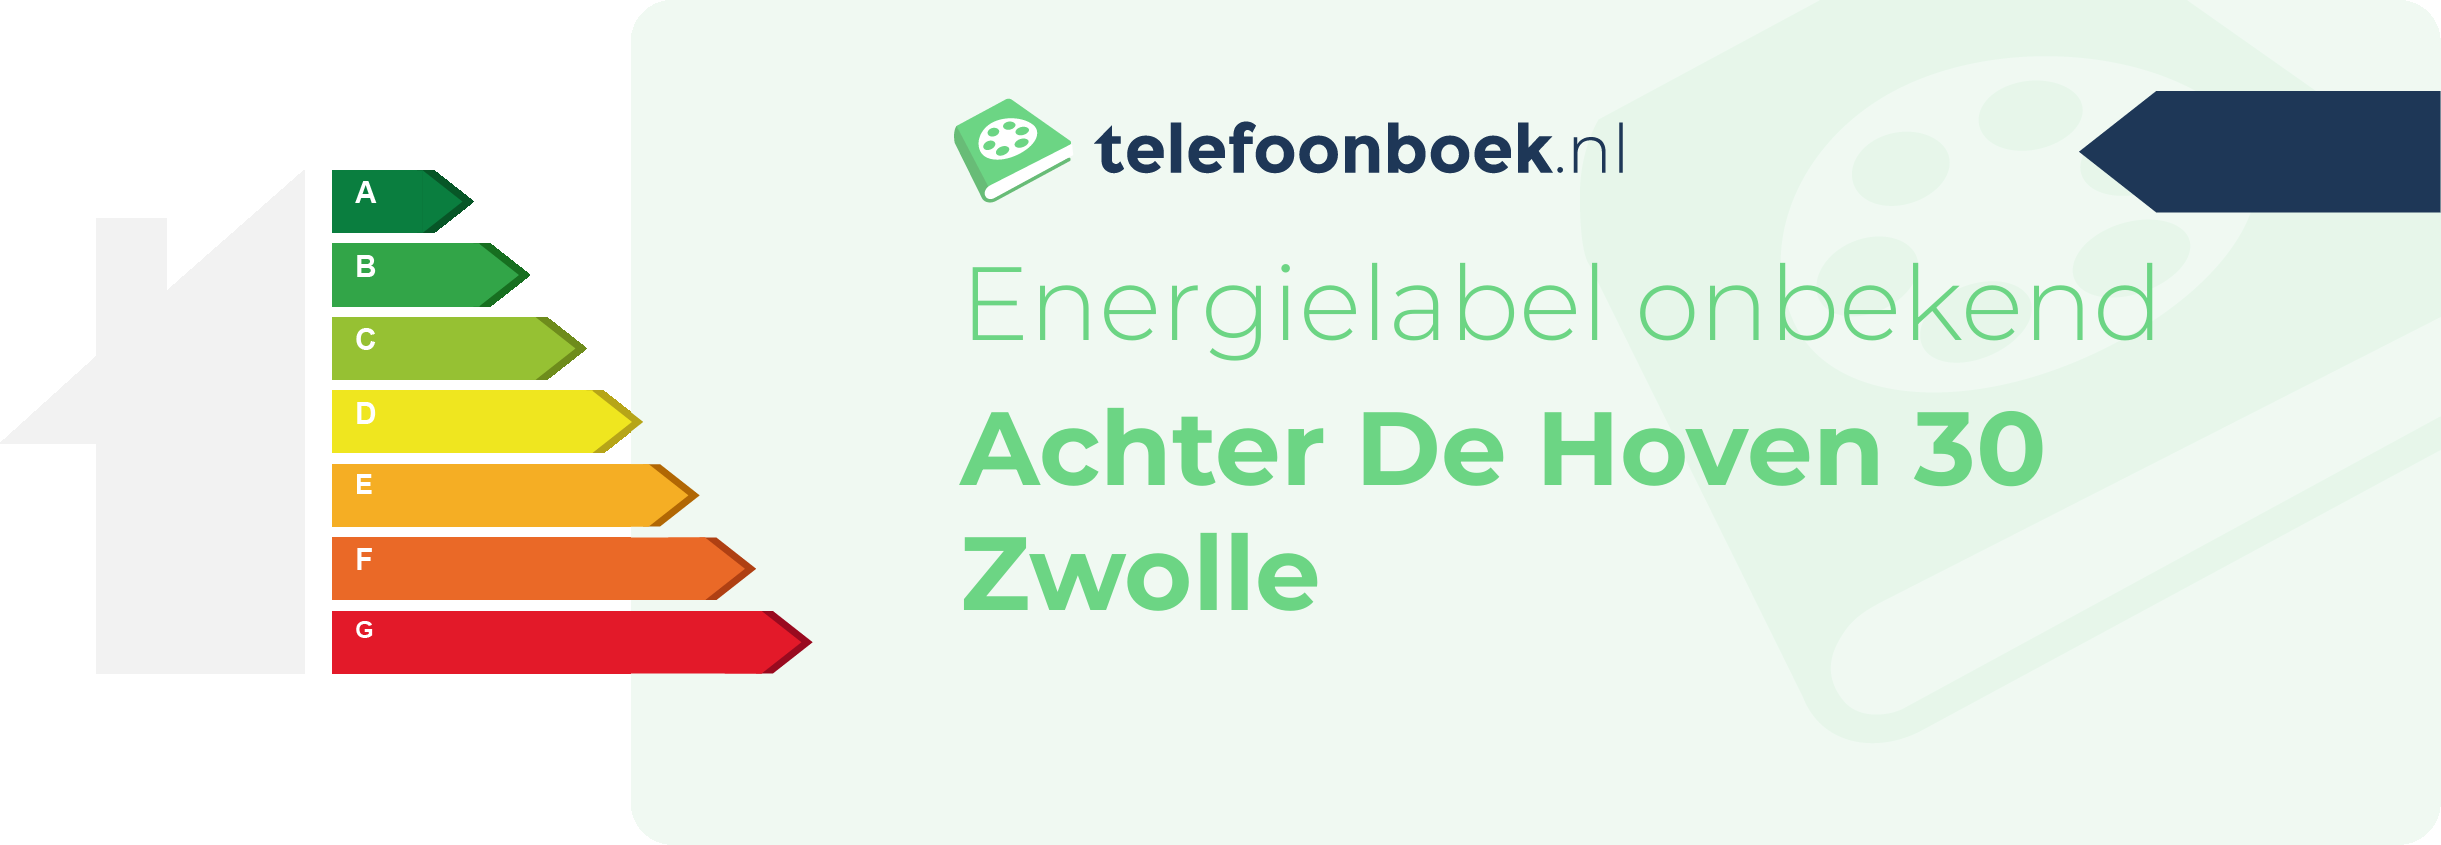 Energielabel Achter De Hoven 30 Zwolle